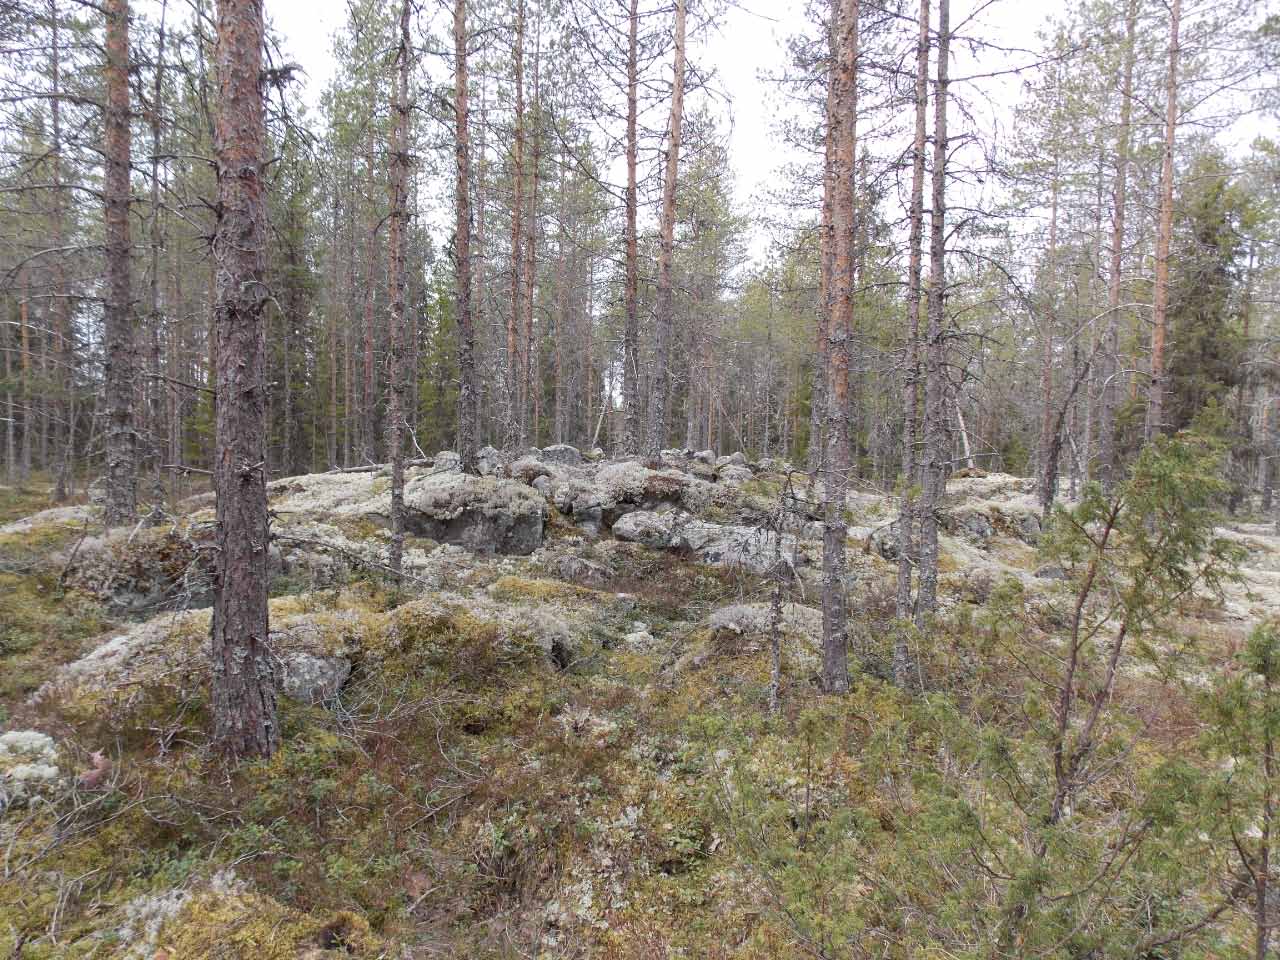 Kuva: Röykkiö 5 kaakosta. Pohjois-Pohjanmaan museo. CC BY 4.0 Mika Sarkkinen 6.5.2021